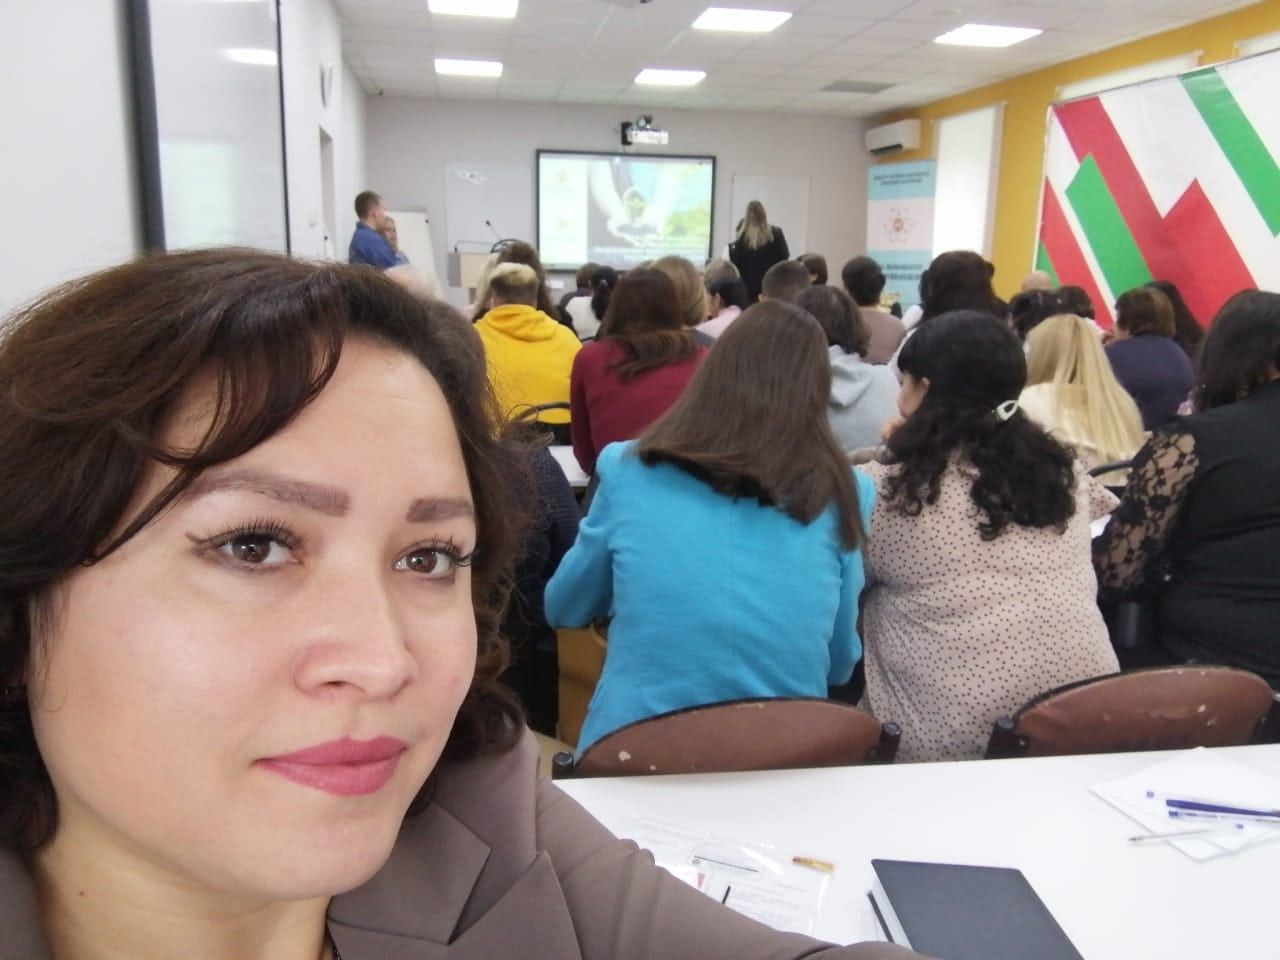 Гульчачак Валиева принимала участие в совещании детских общественных организаций  в Казани